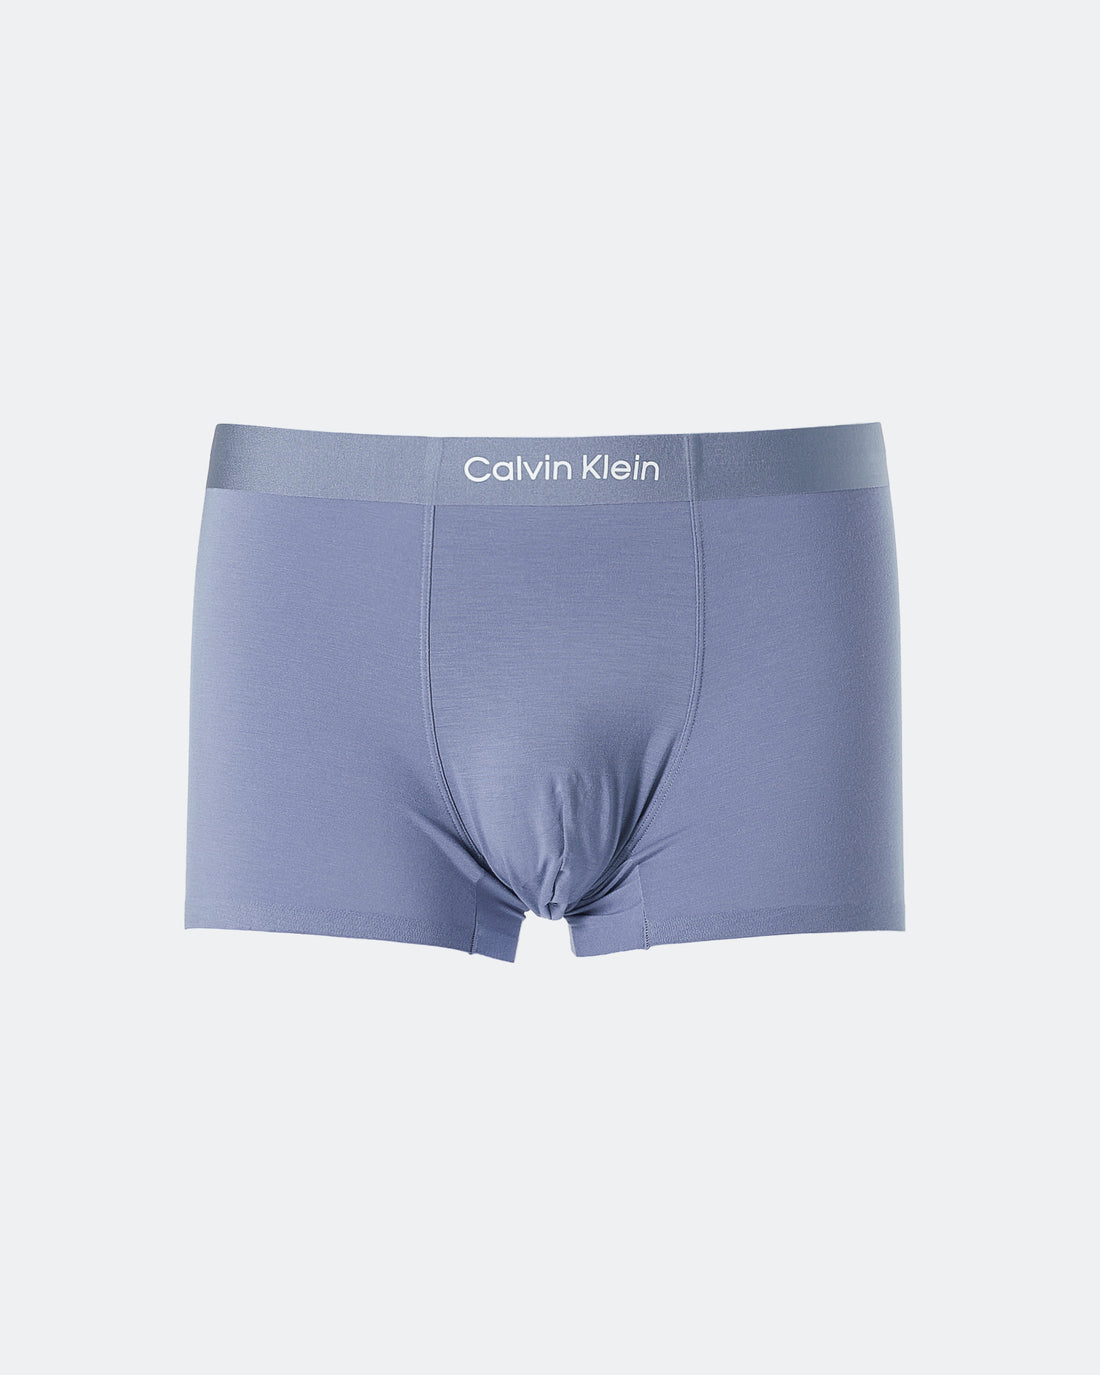 CK Plain Color Men Light Blue Underwear 6.90